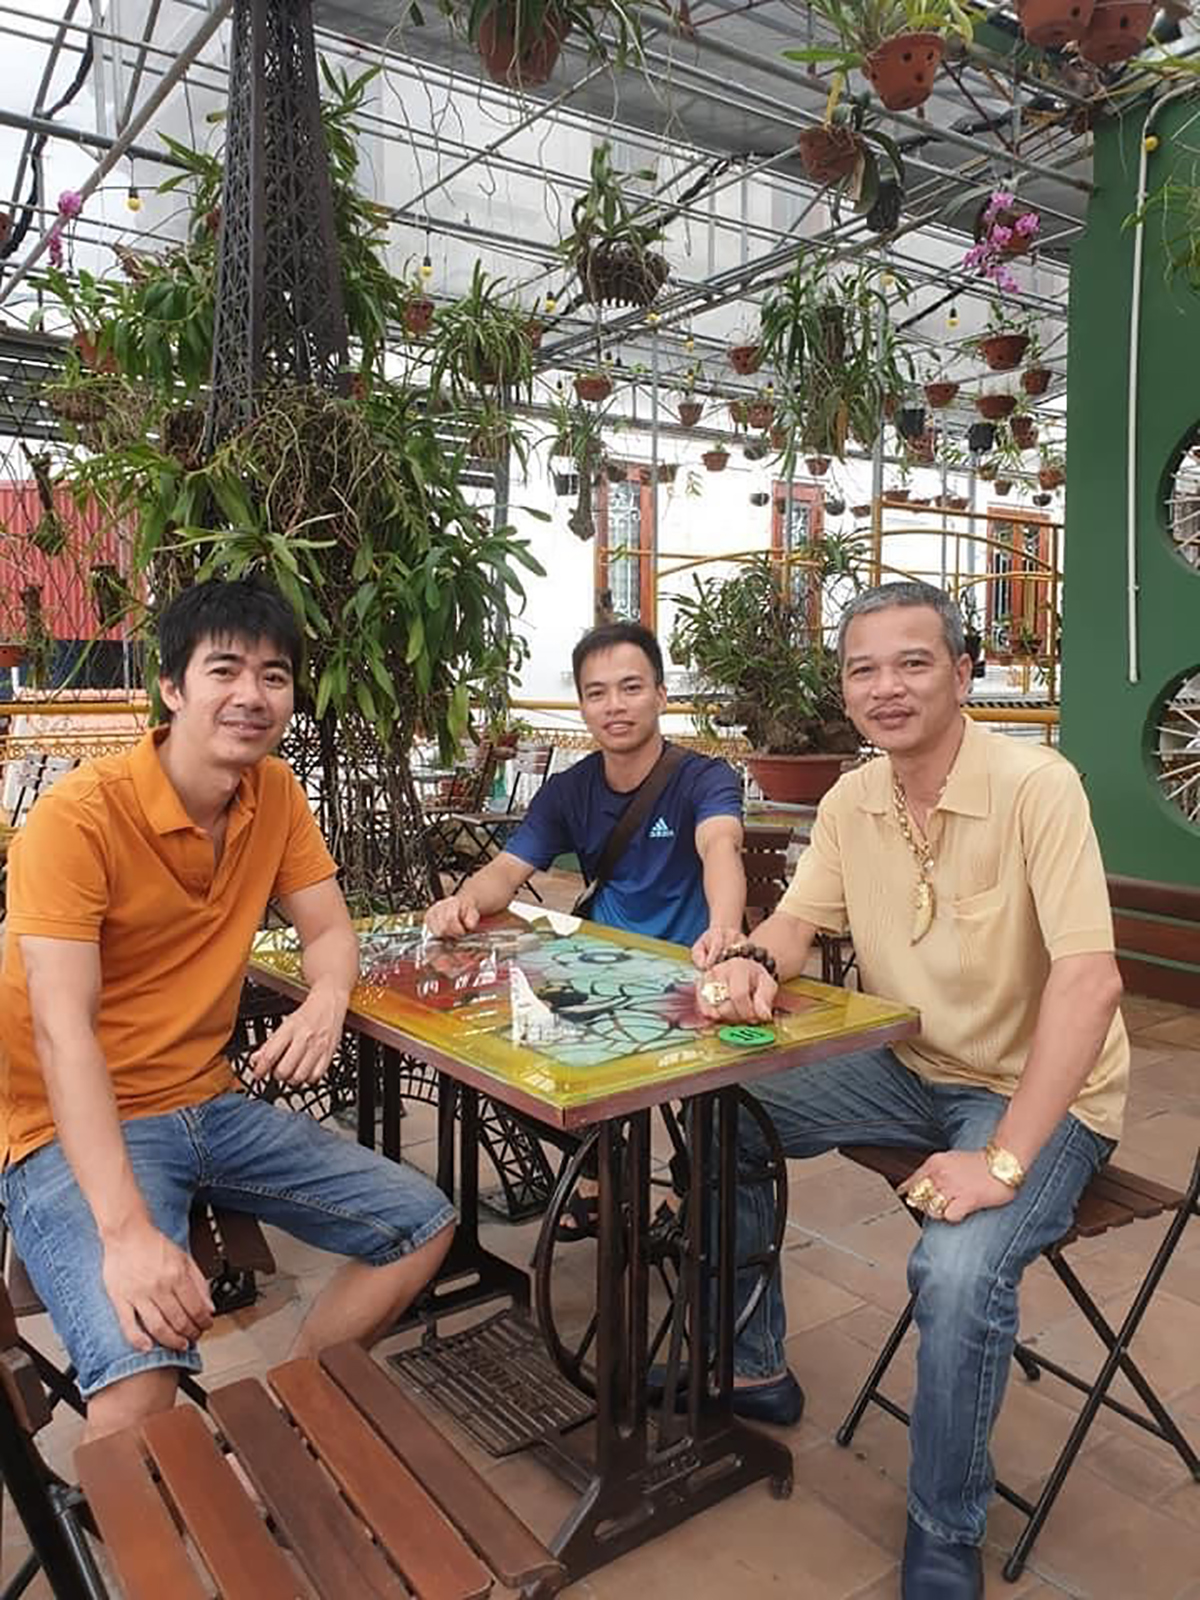  Ông chủ Hiếu Hoàng và vài người bạn tại Sài Gòn xưa coffee